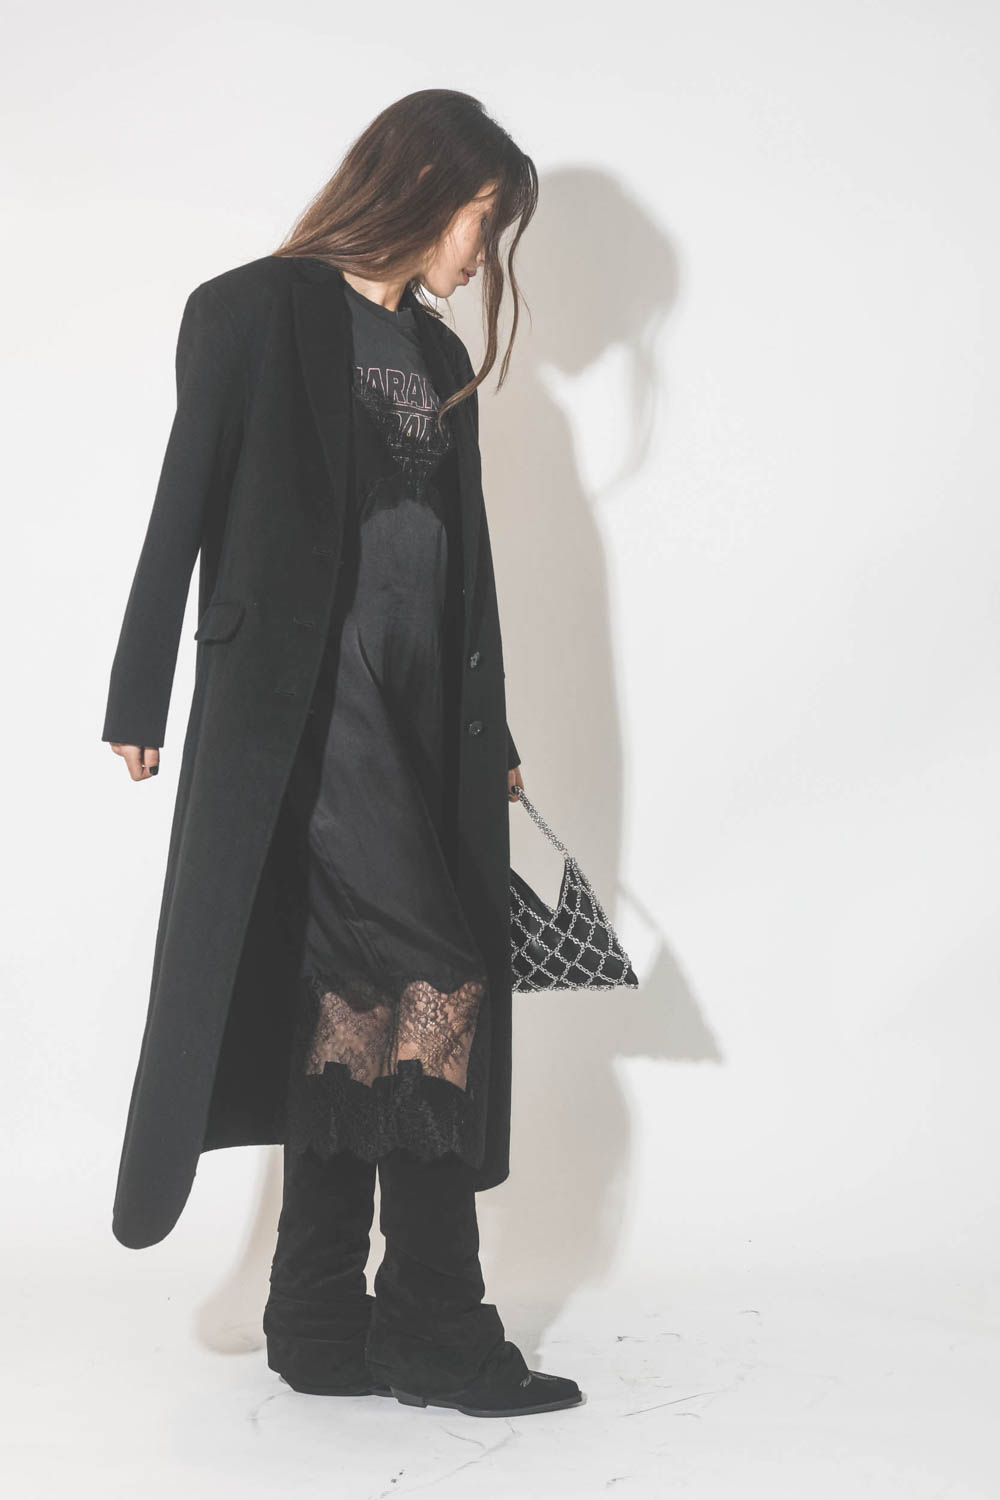 Robe fines bretelles en soie et dentelle noire Amélie Anine Bing. Porté avec un long manteau en cachemire noir.